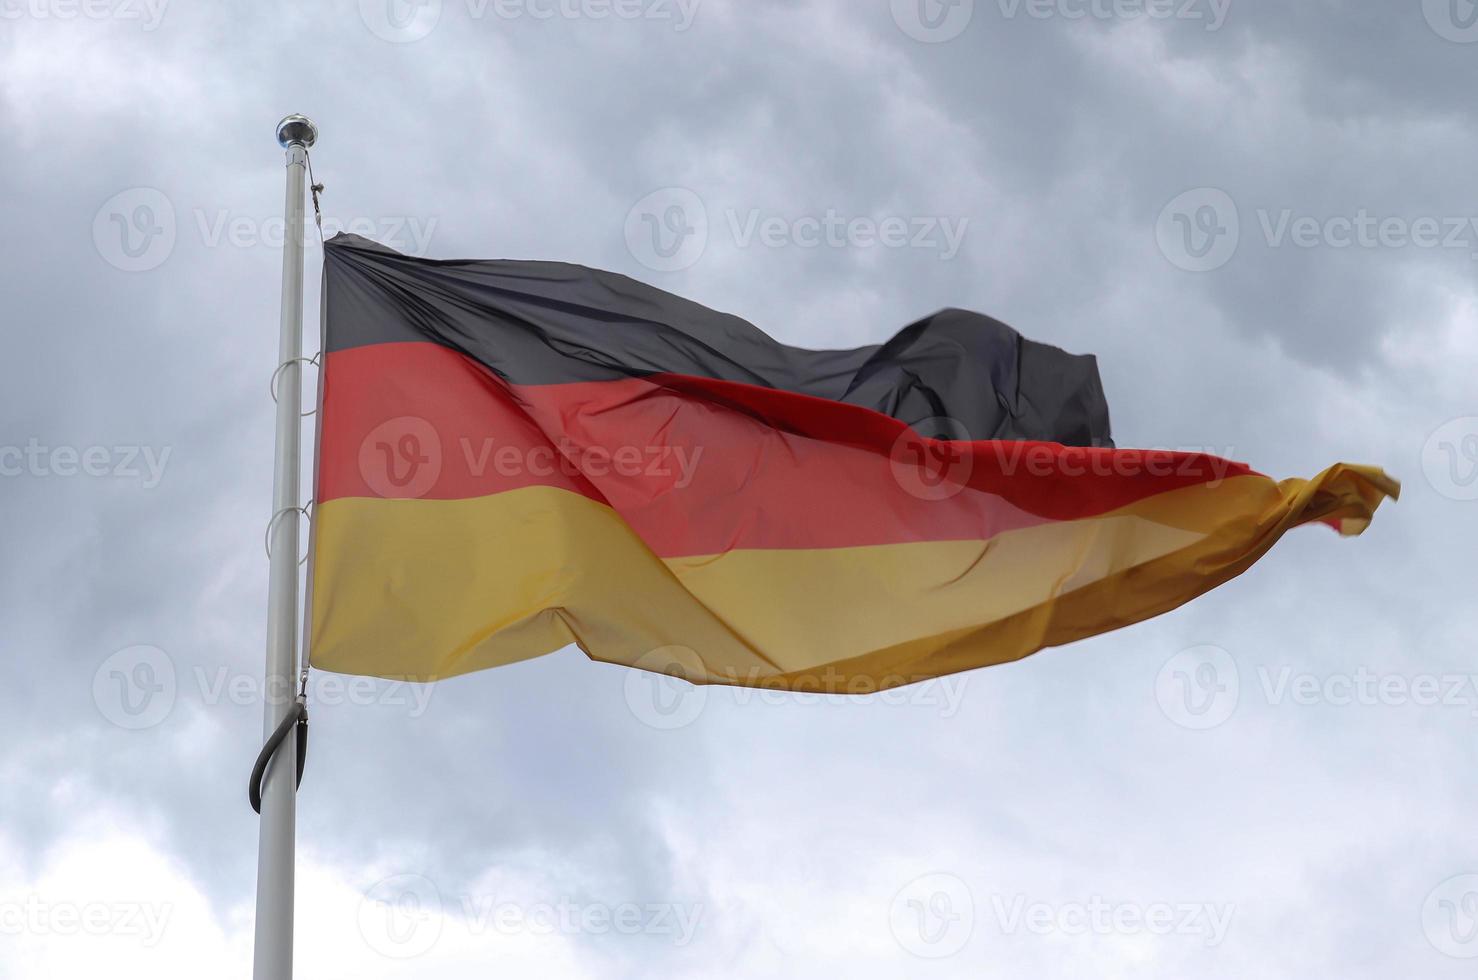 tyska flaggan vid en flaggstång som rör sig långsamt i vinden mot himlen foto